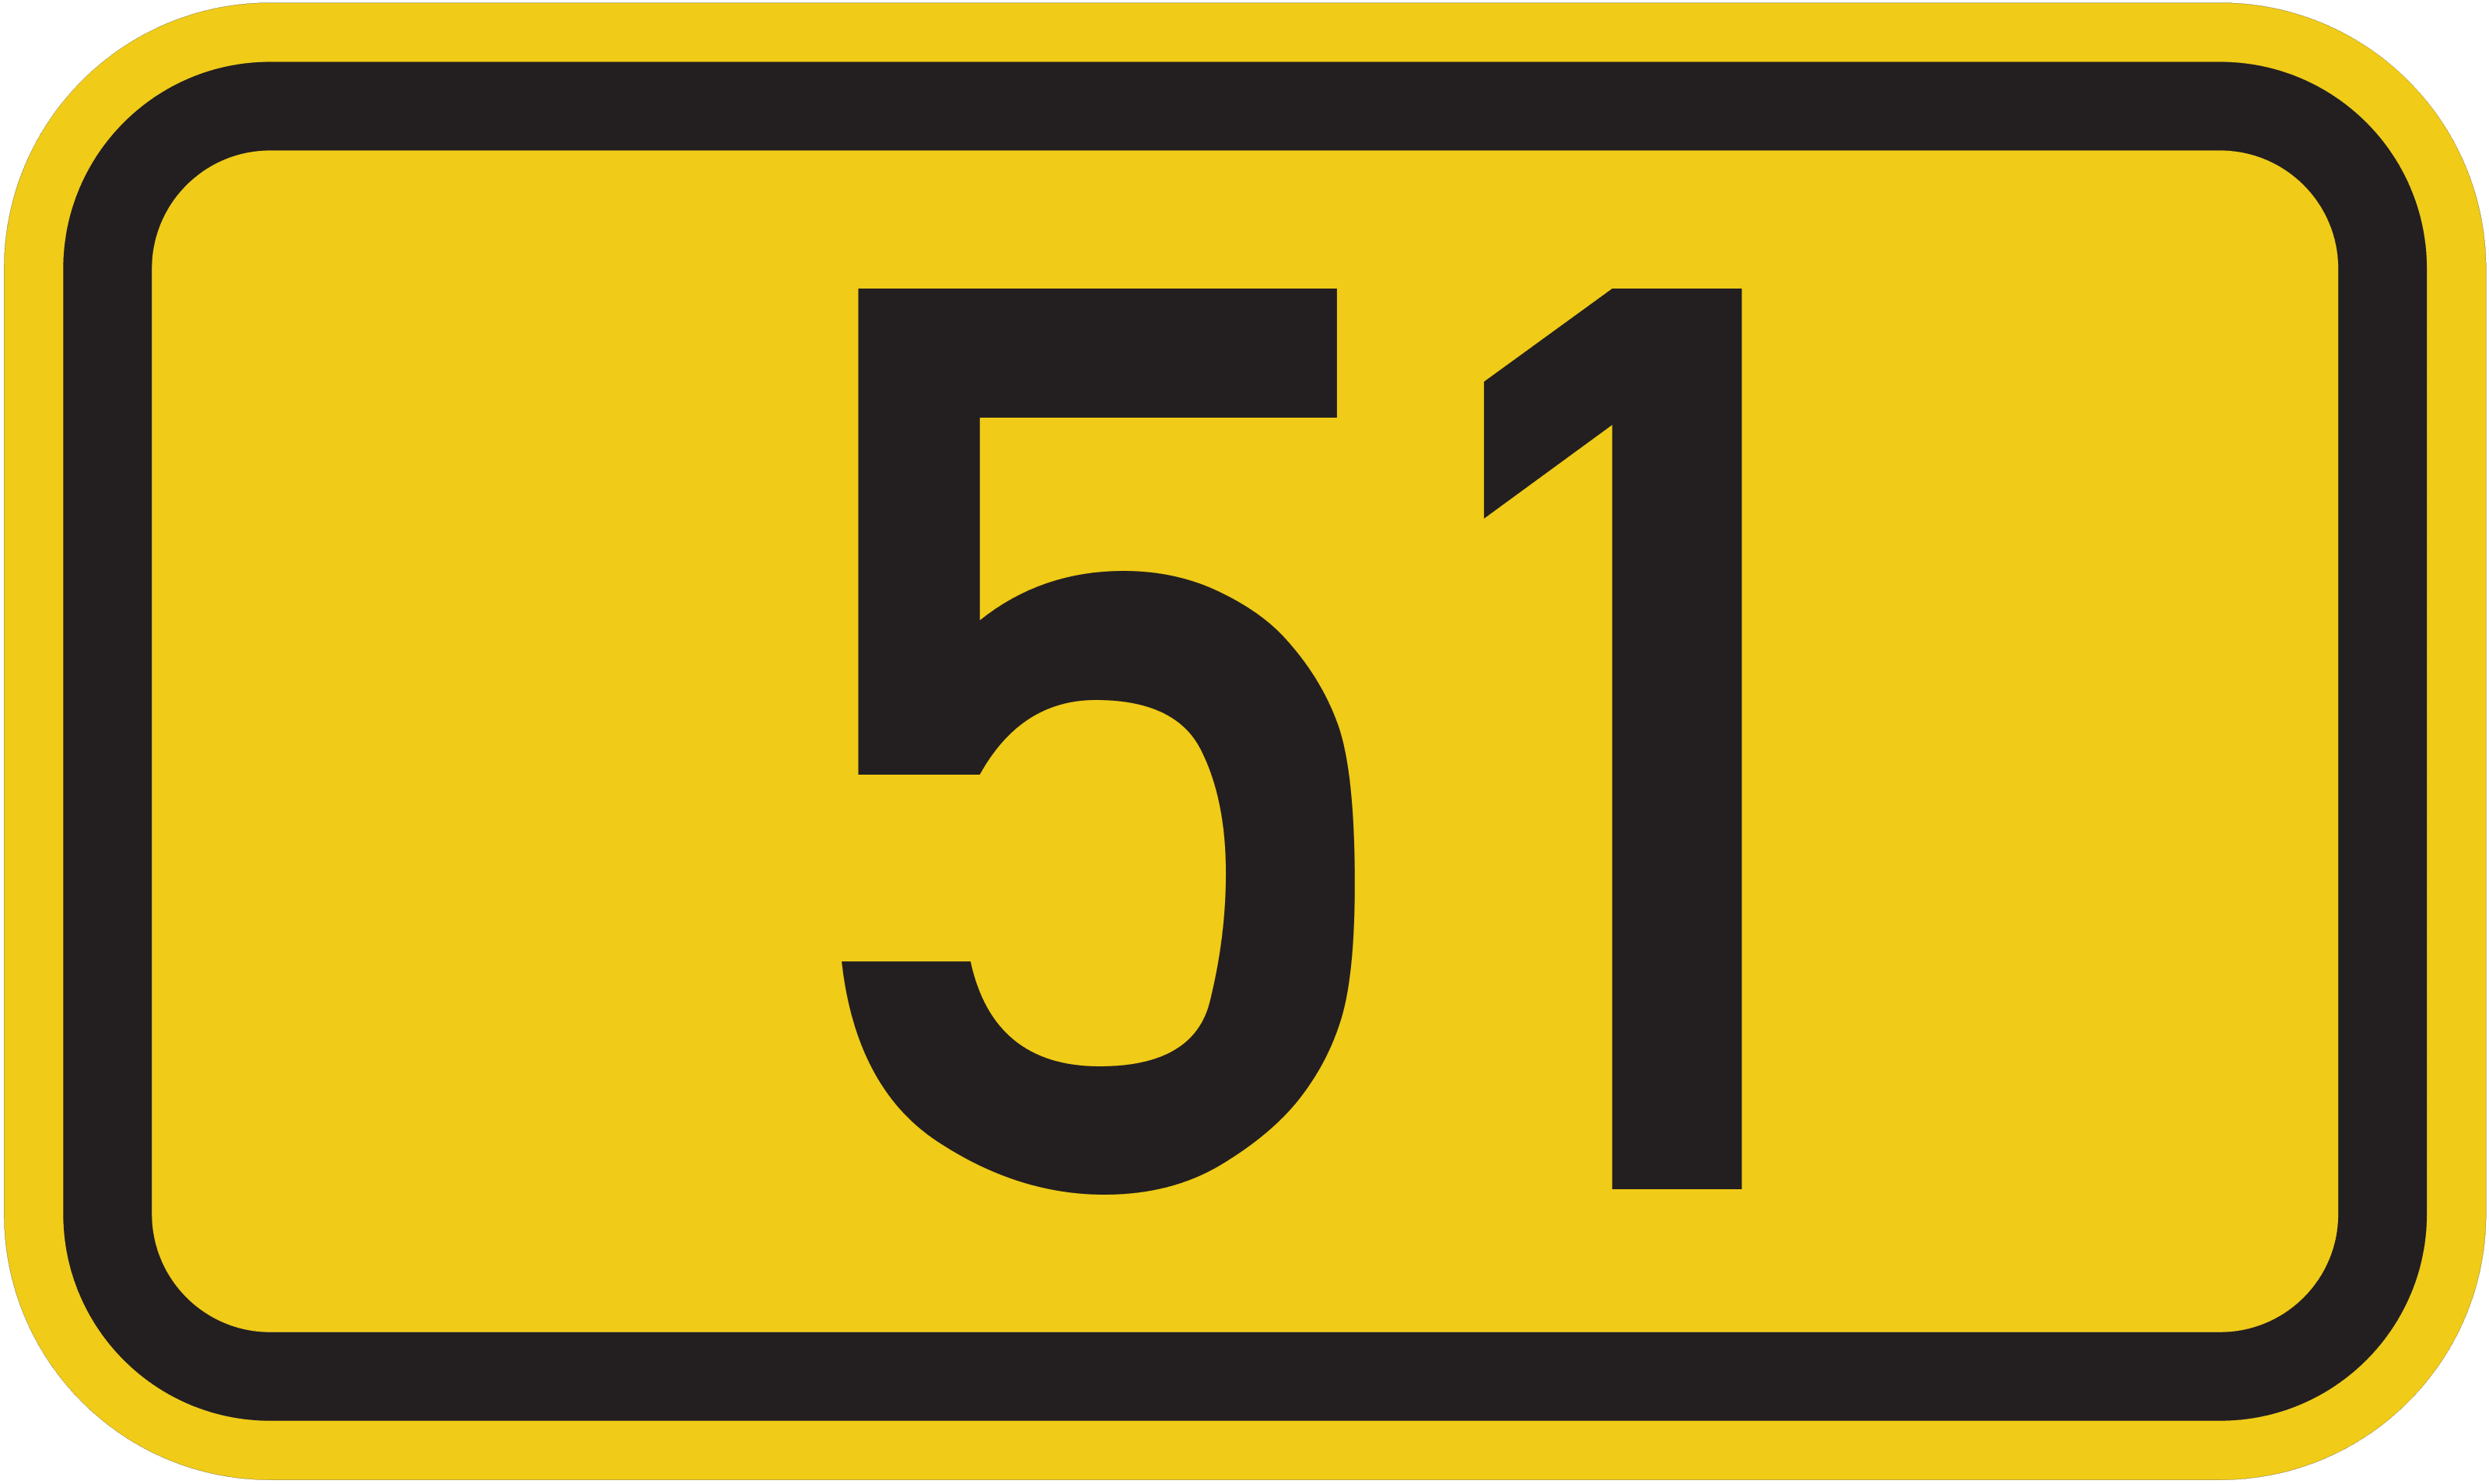 Bundesstraße B 51